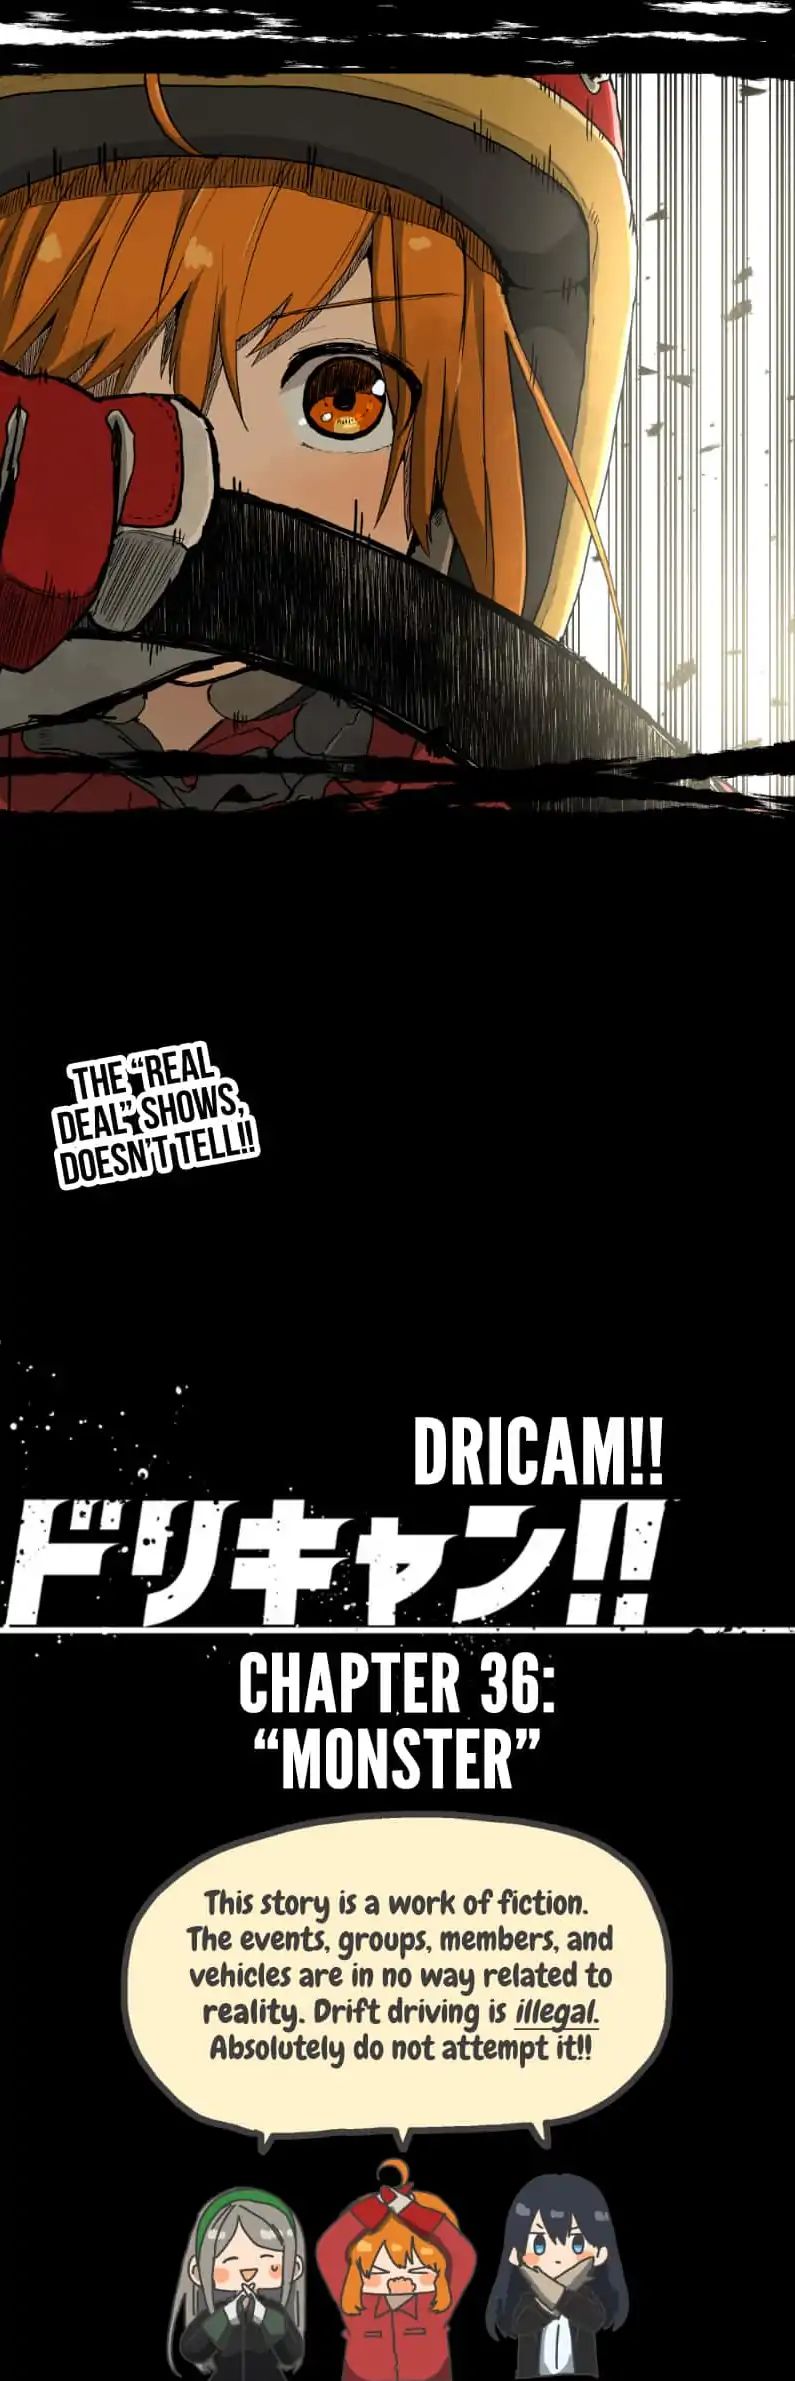 Dricam!! Chapter 36: Monster